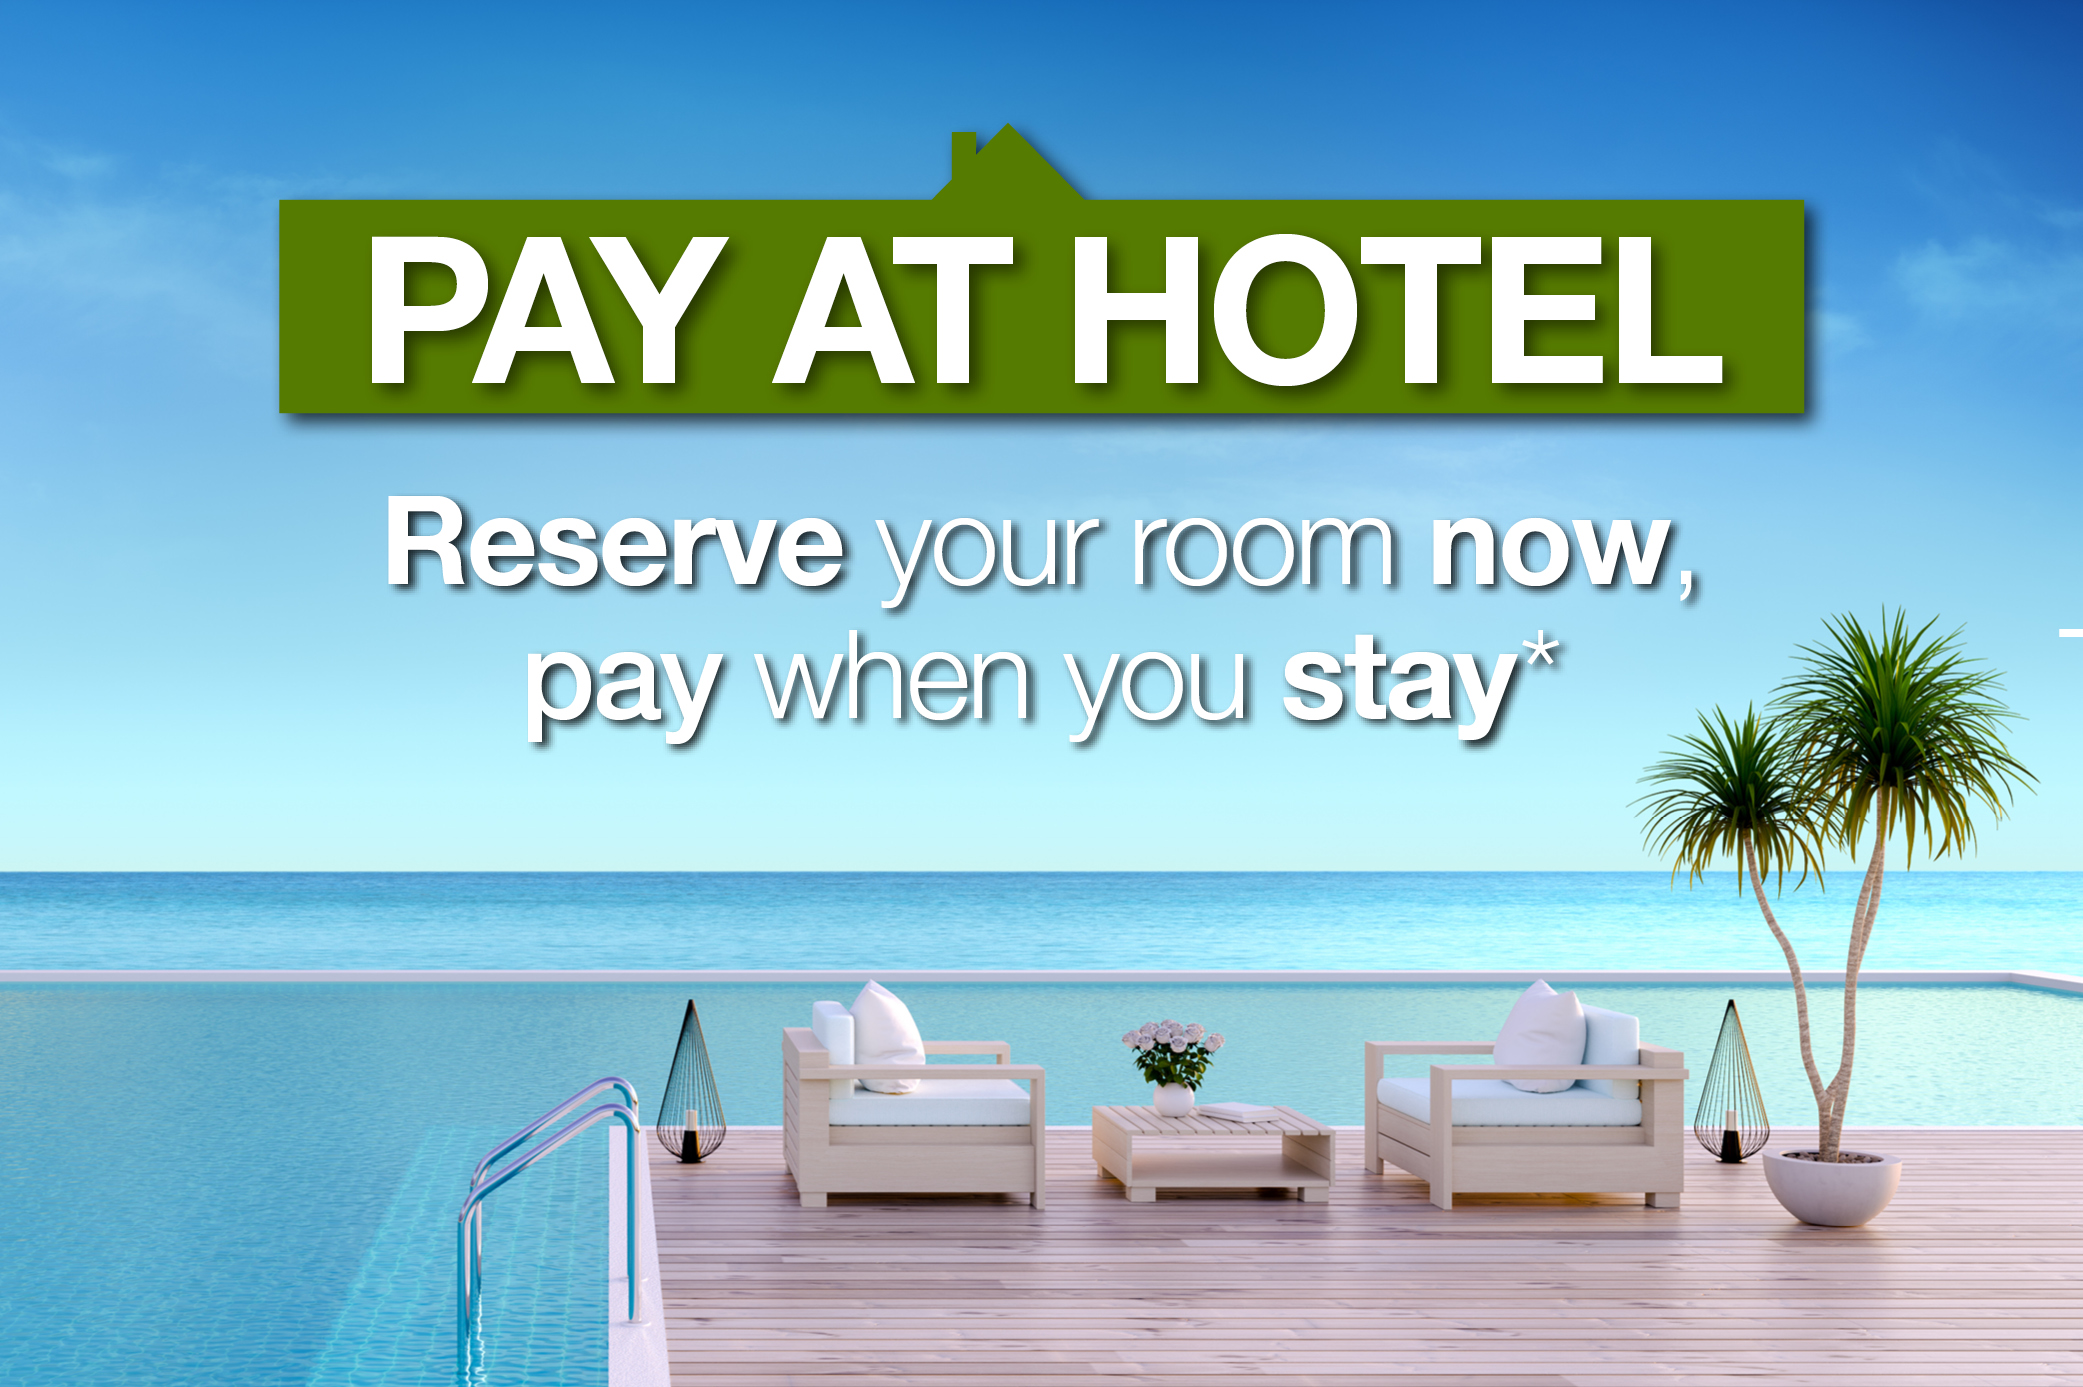 Pay at Hotel